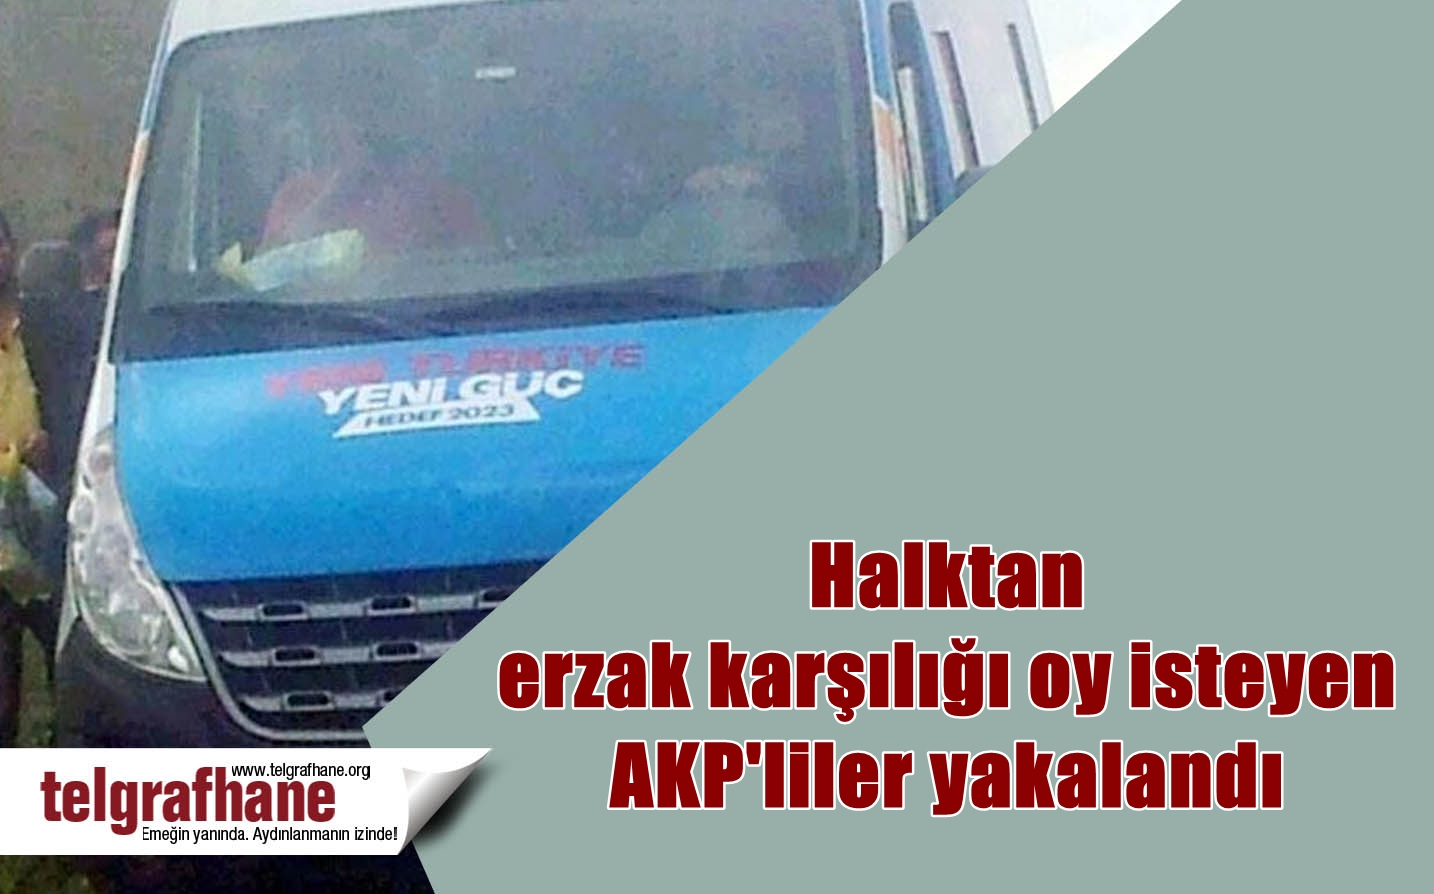 Halktan erzak karşılığı oy isteyen AKP’liler yakalandı